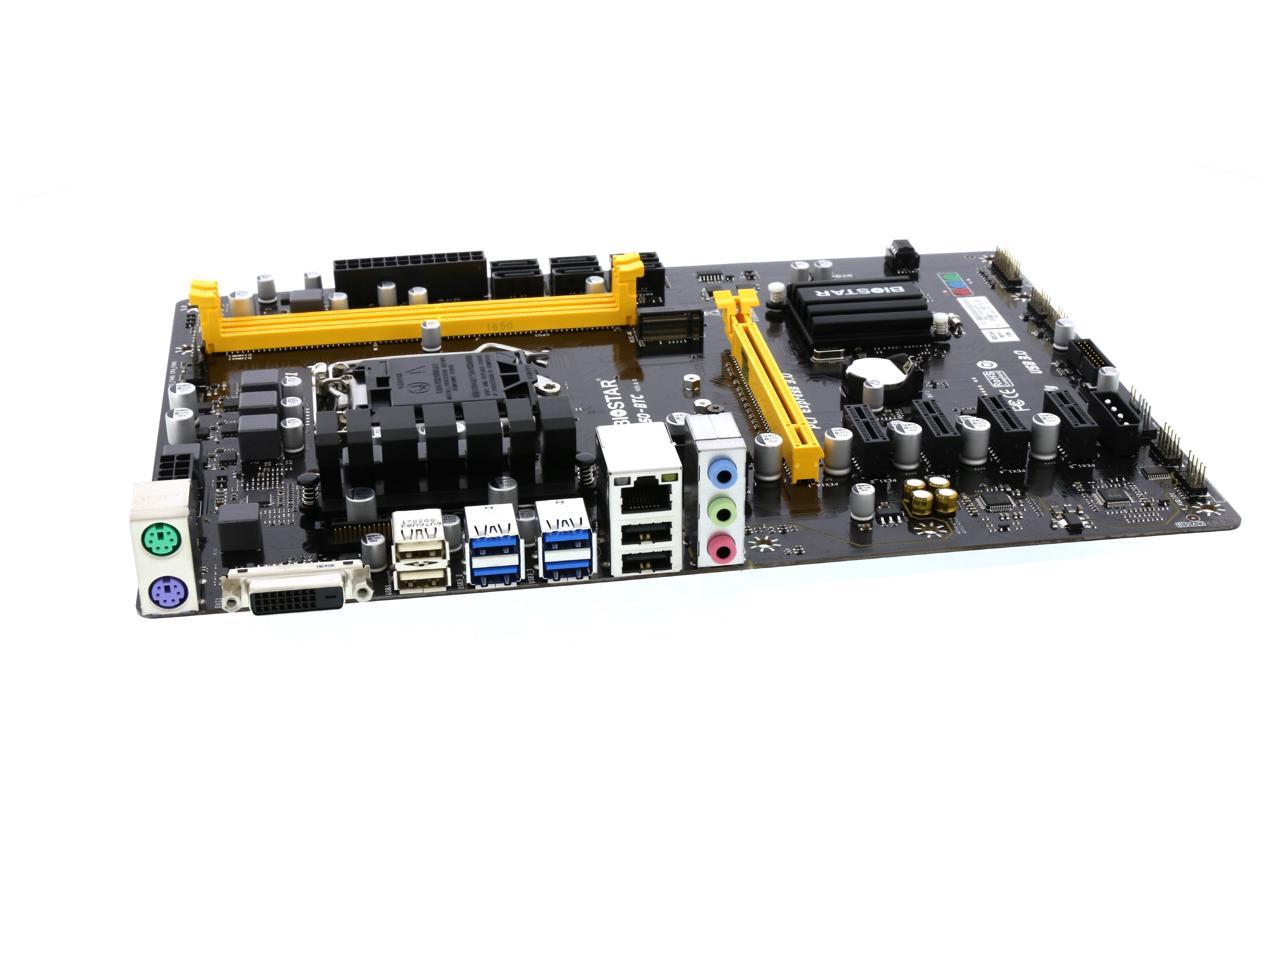 BIOSTAR LGA 1151 プロセッサ対応 Intel B250 チップセット搭載 ATXマザーボード TB250-BTC